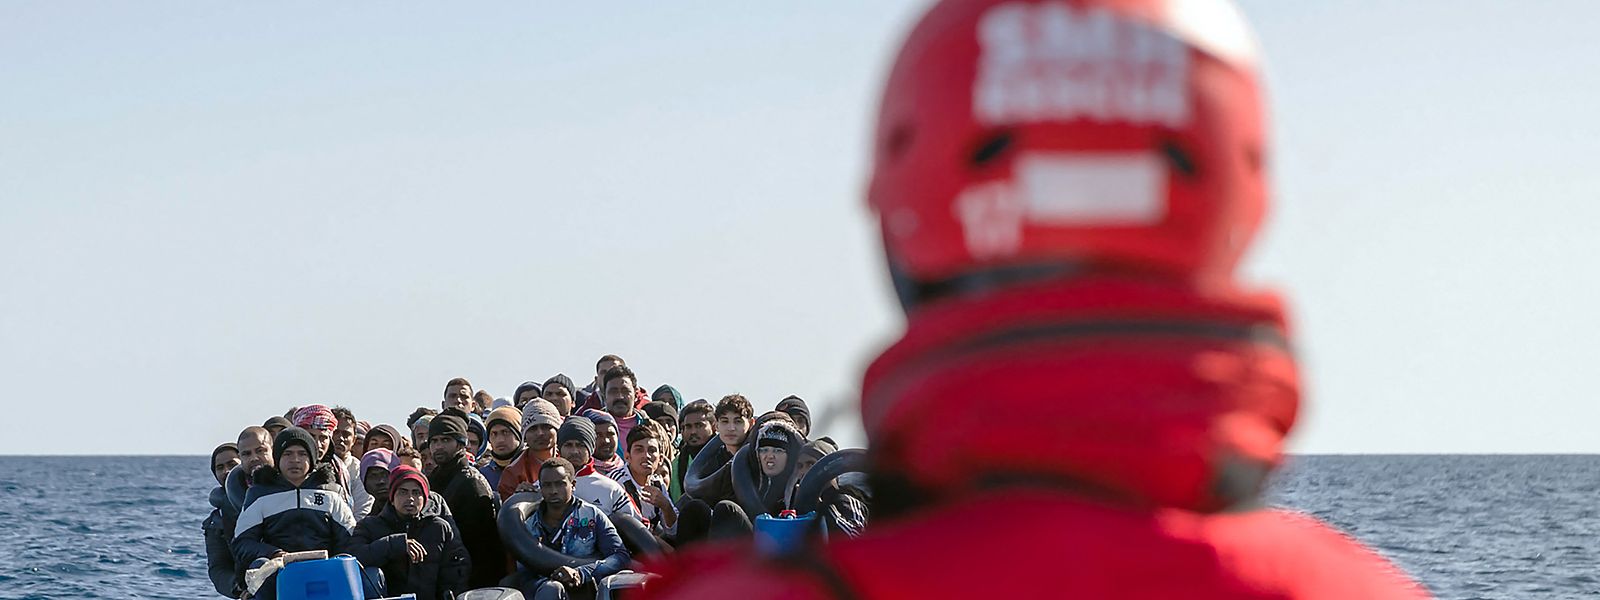 Immer wieder versuchen Flüchtlinge aus Afghanistan und anderen Ländern in überfüllten Booten von der Türkei aus Griechenland - und damit die EU - zu erreichen.